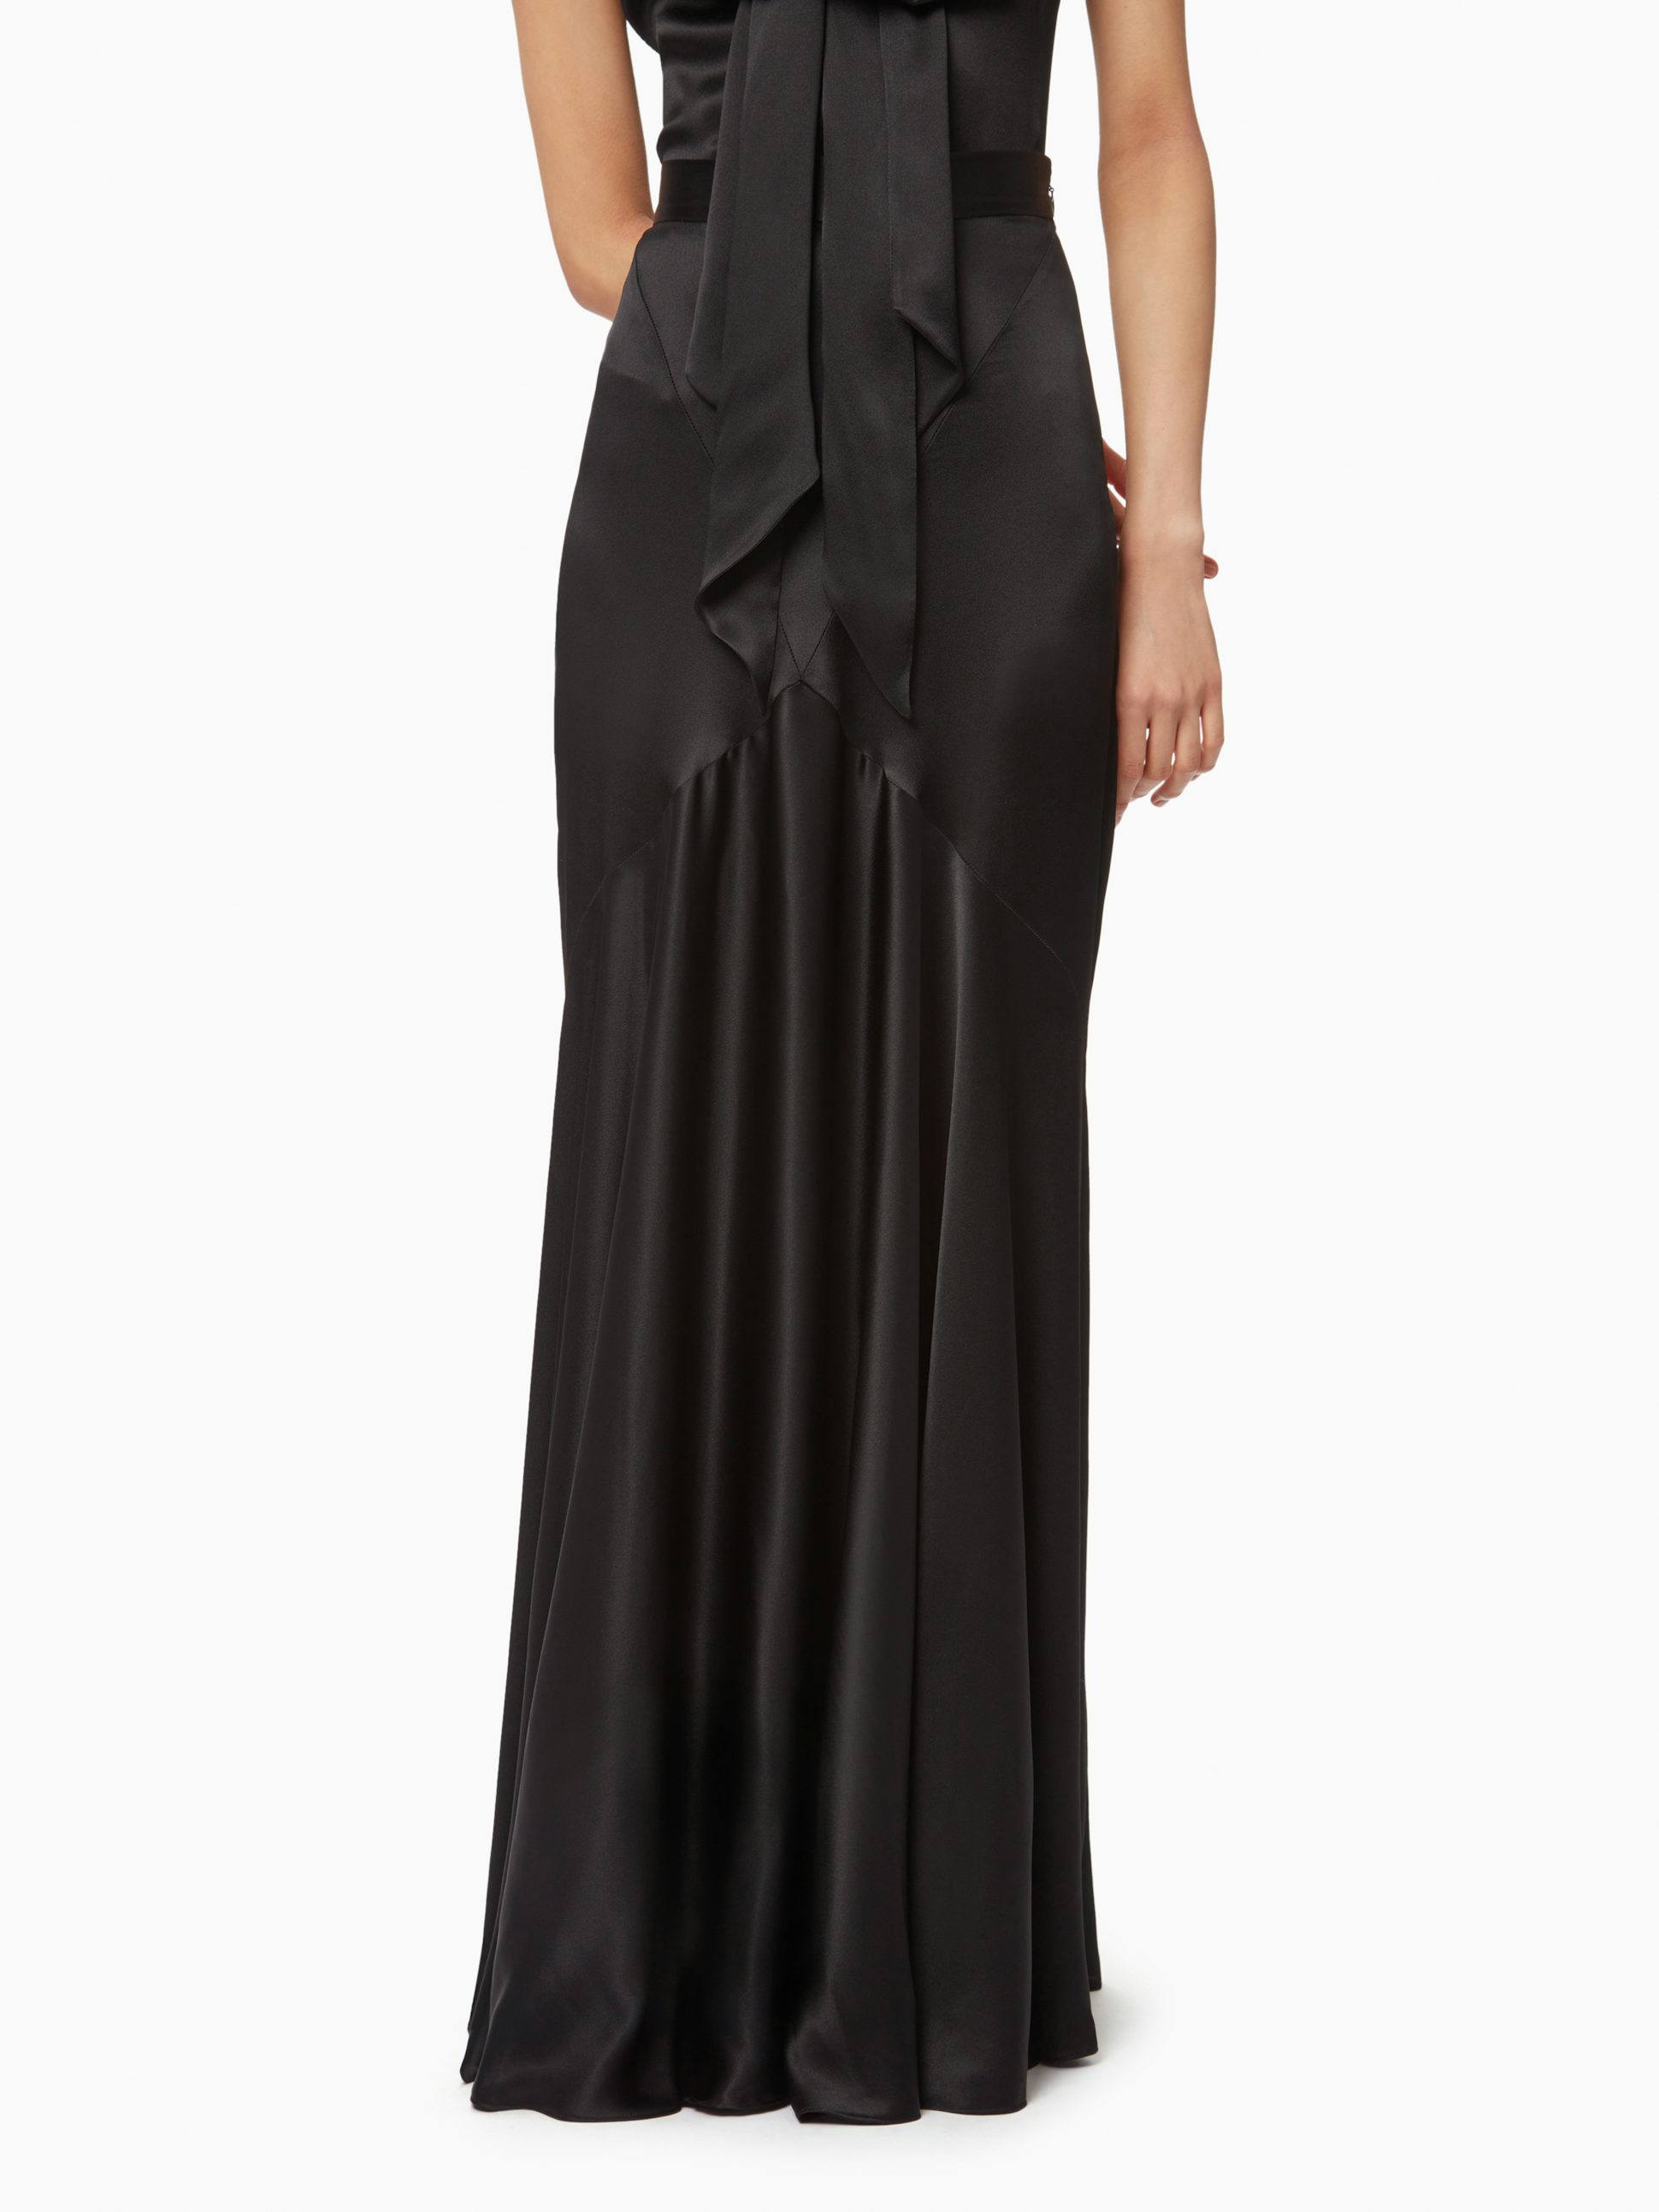 Long bias cut skirt in black - Nina Ricci